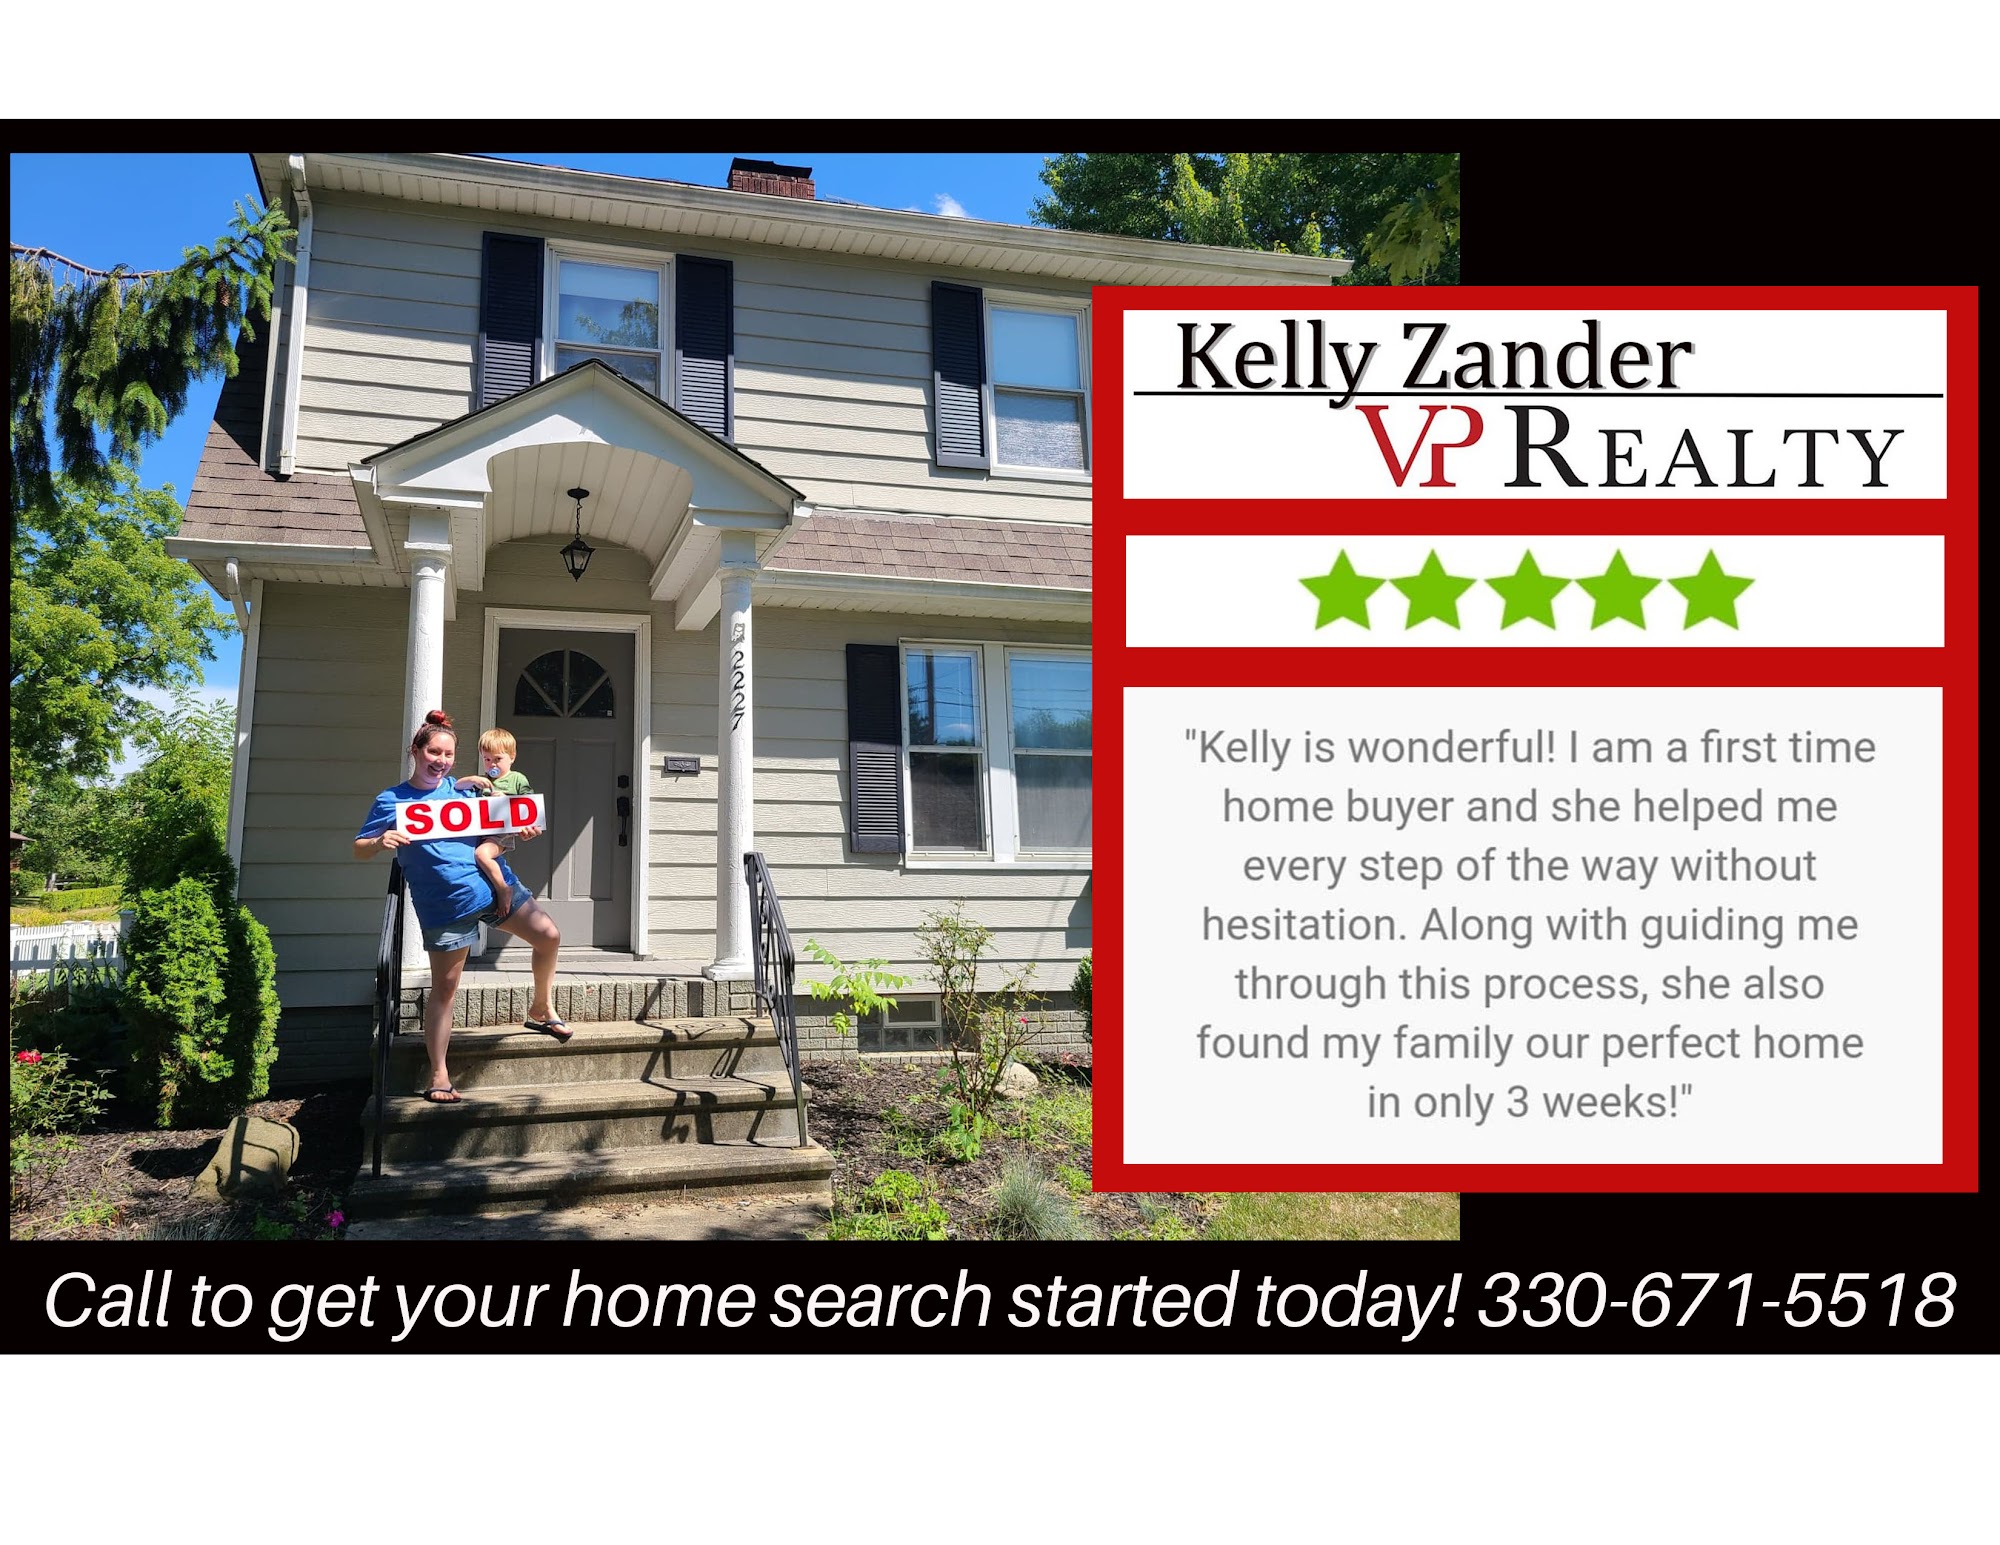 Kelly Zander Realtor, VP Realty 8143 Windham St, Garrettsville Ohio 44231